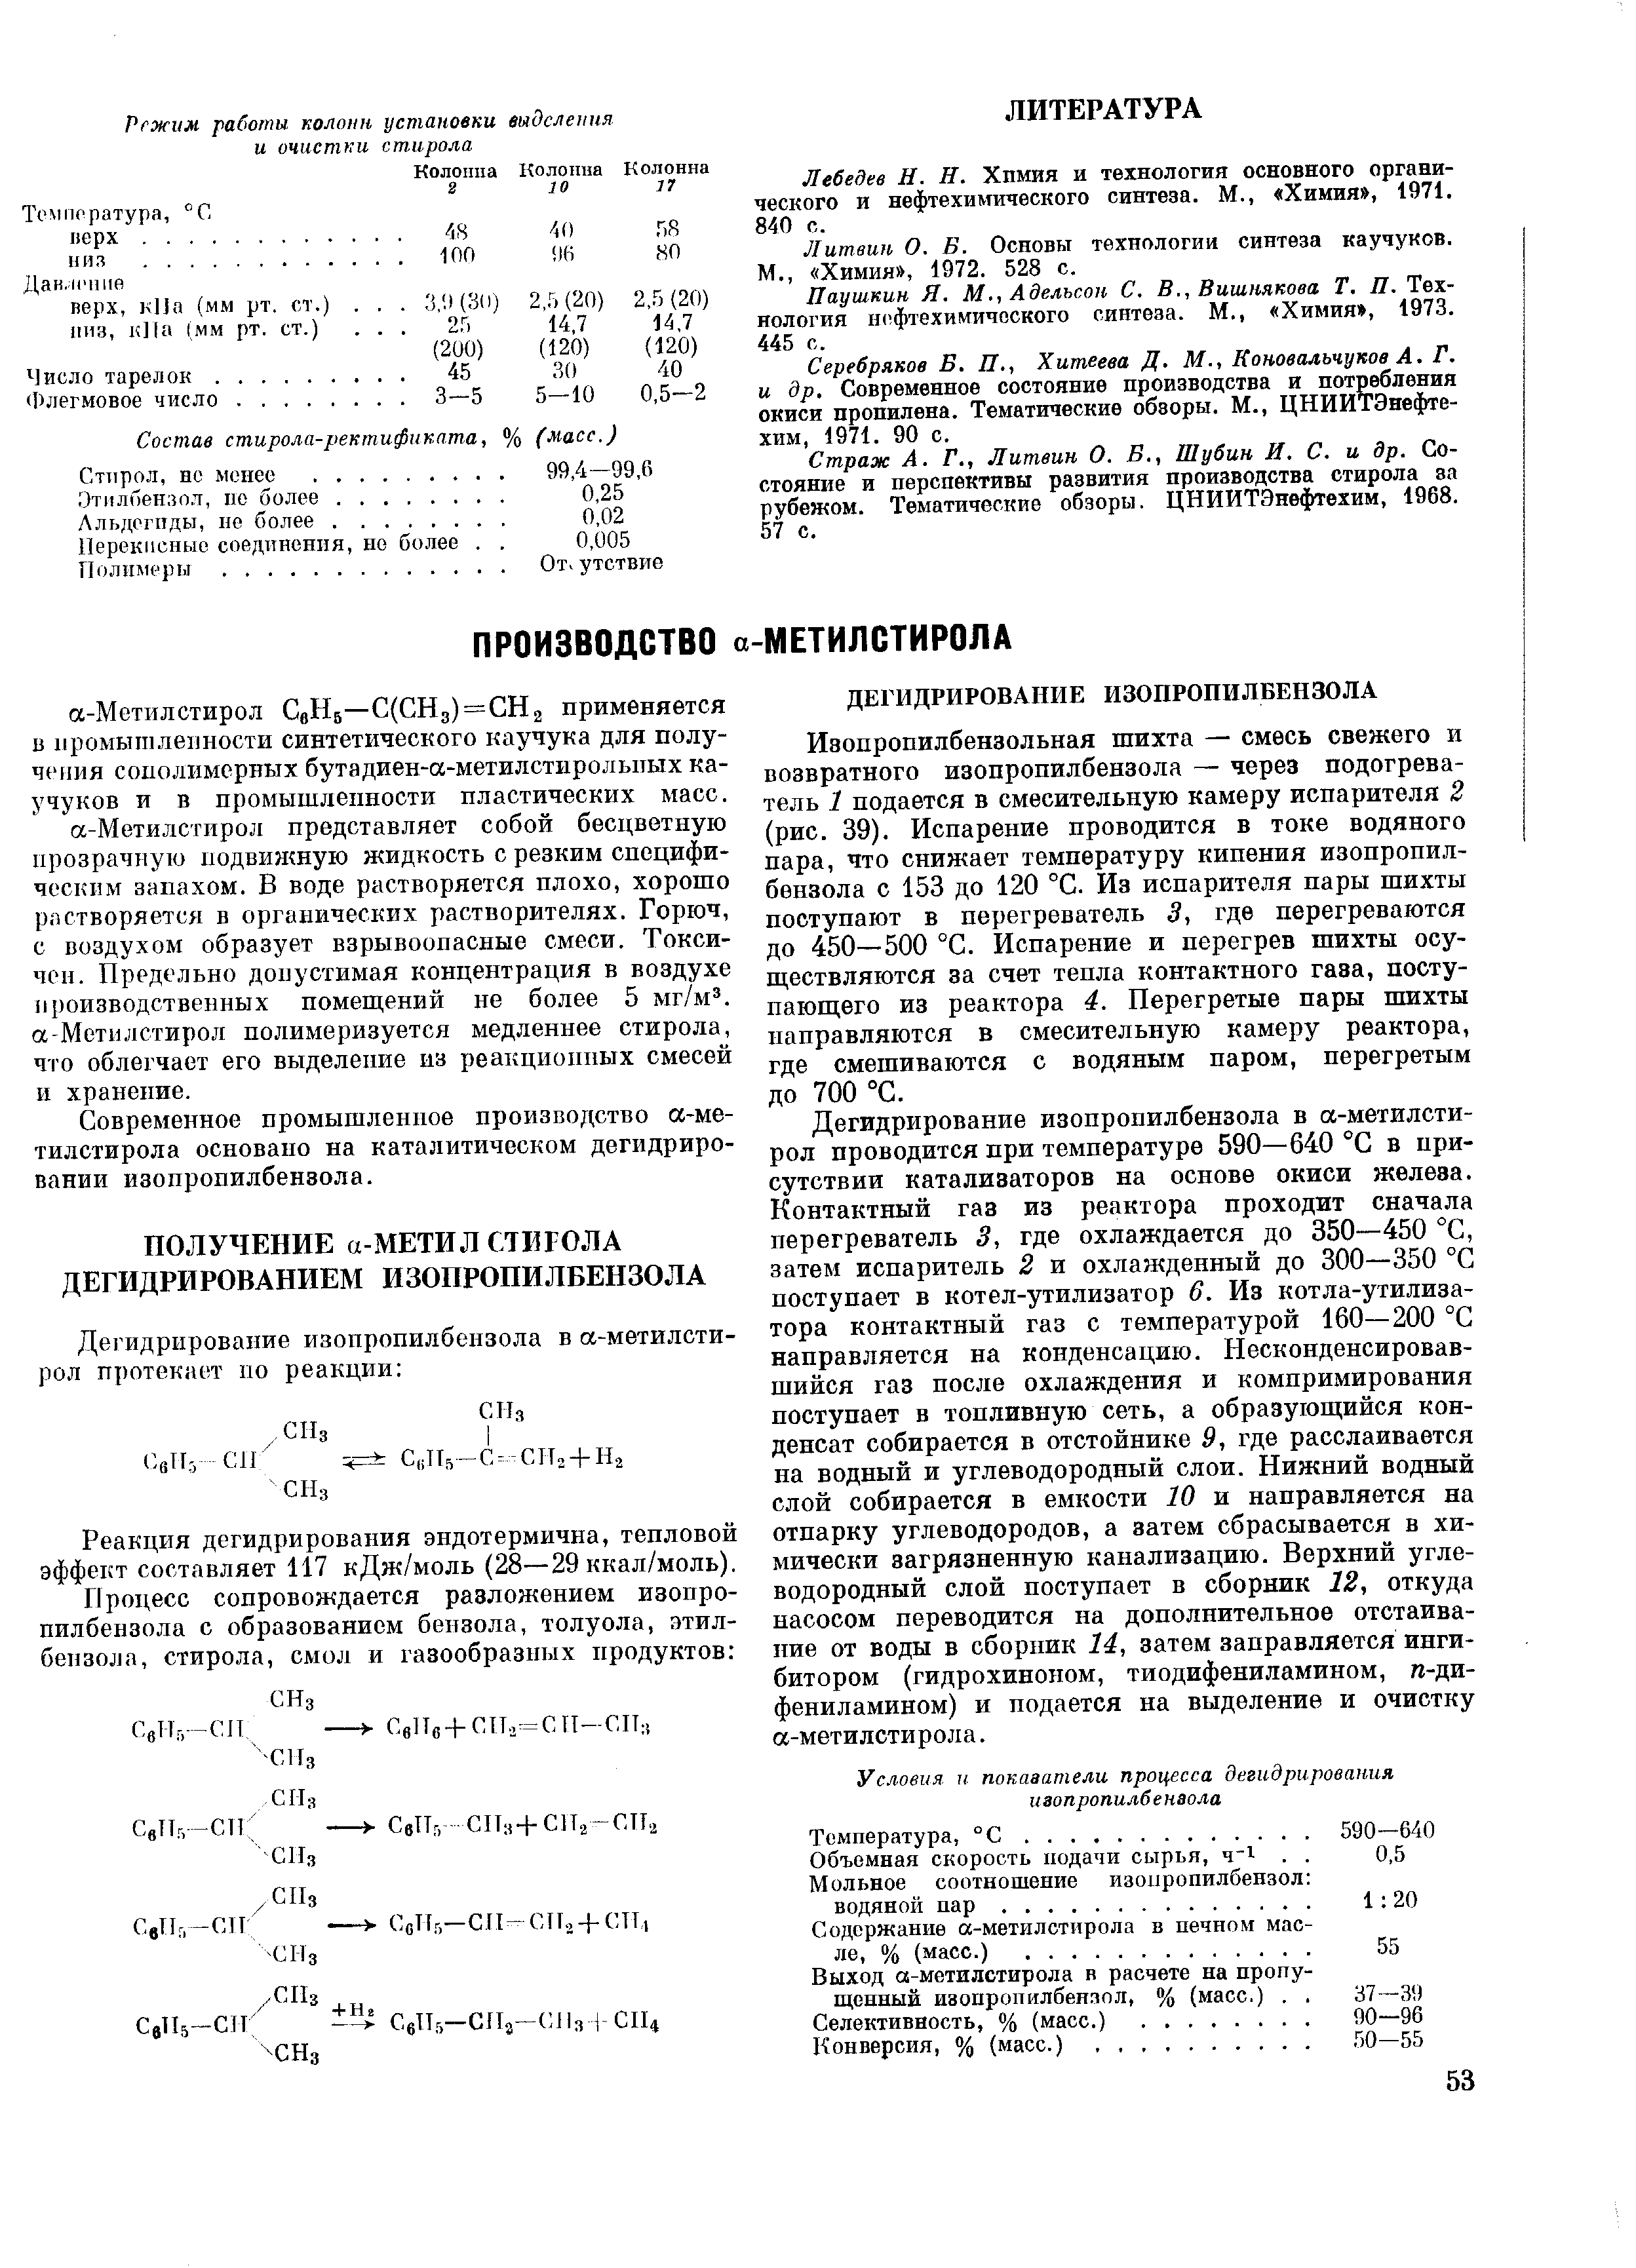 Лебедев Н. Н. Химия и технология основного органического и нефтехимического синтеза. М., Химия , 1971. 840 с.